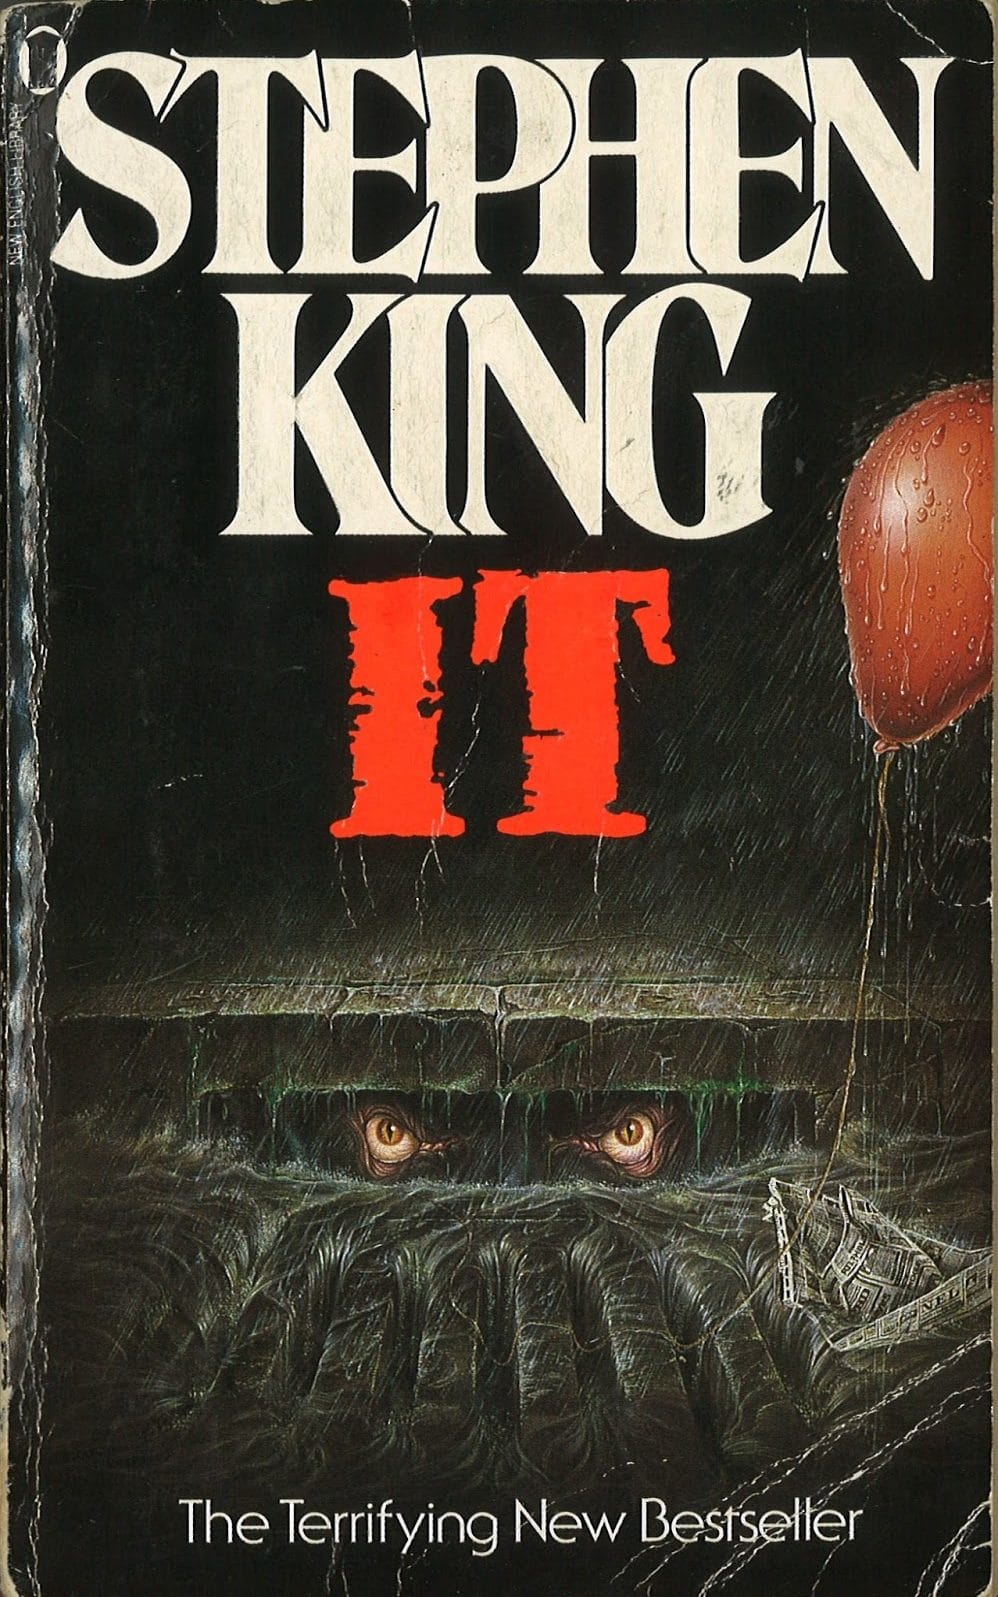 Stephen King - IT